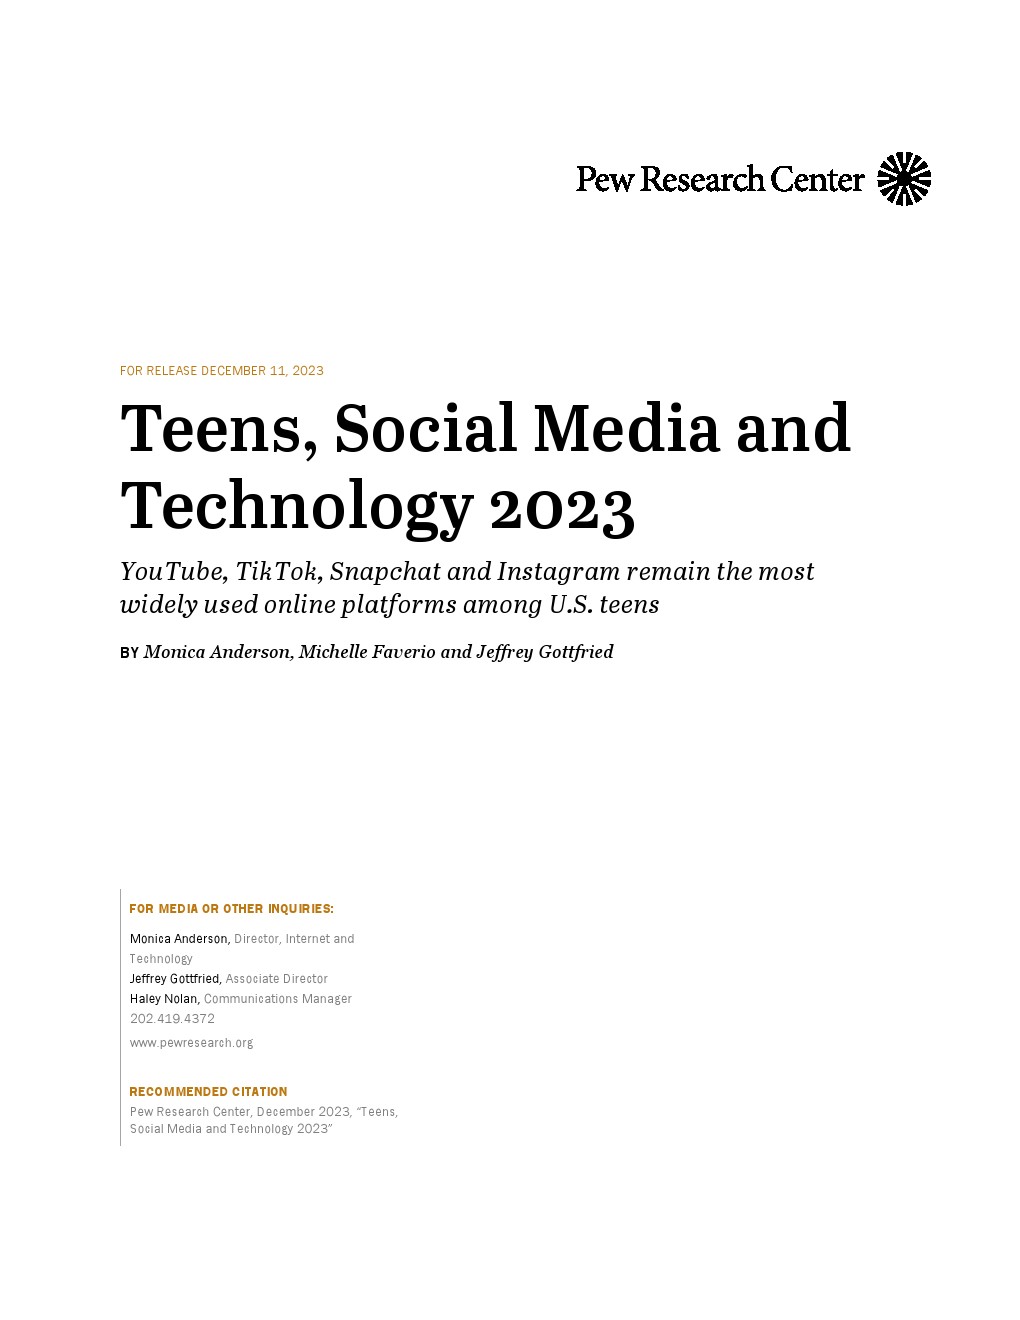 皮尤研究中心：2023年青少年、社交媒体和技术调查报告